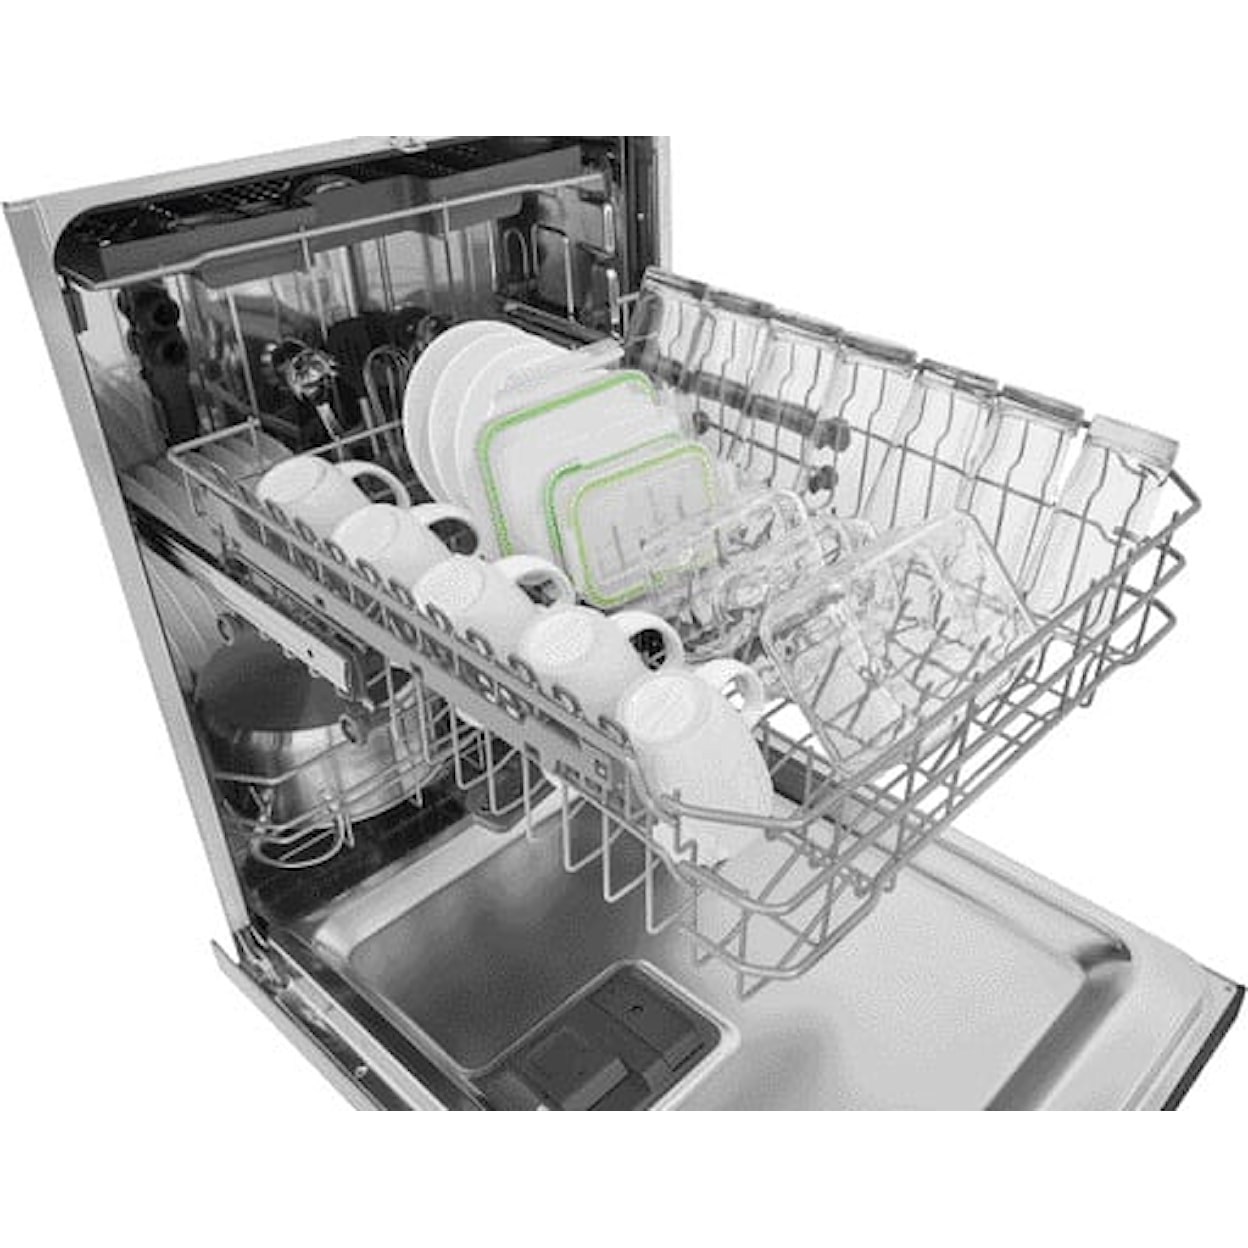 Frigidaire Dishwashers Built In Fullsize Dishwasher - Stainless